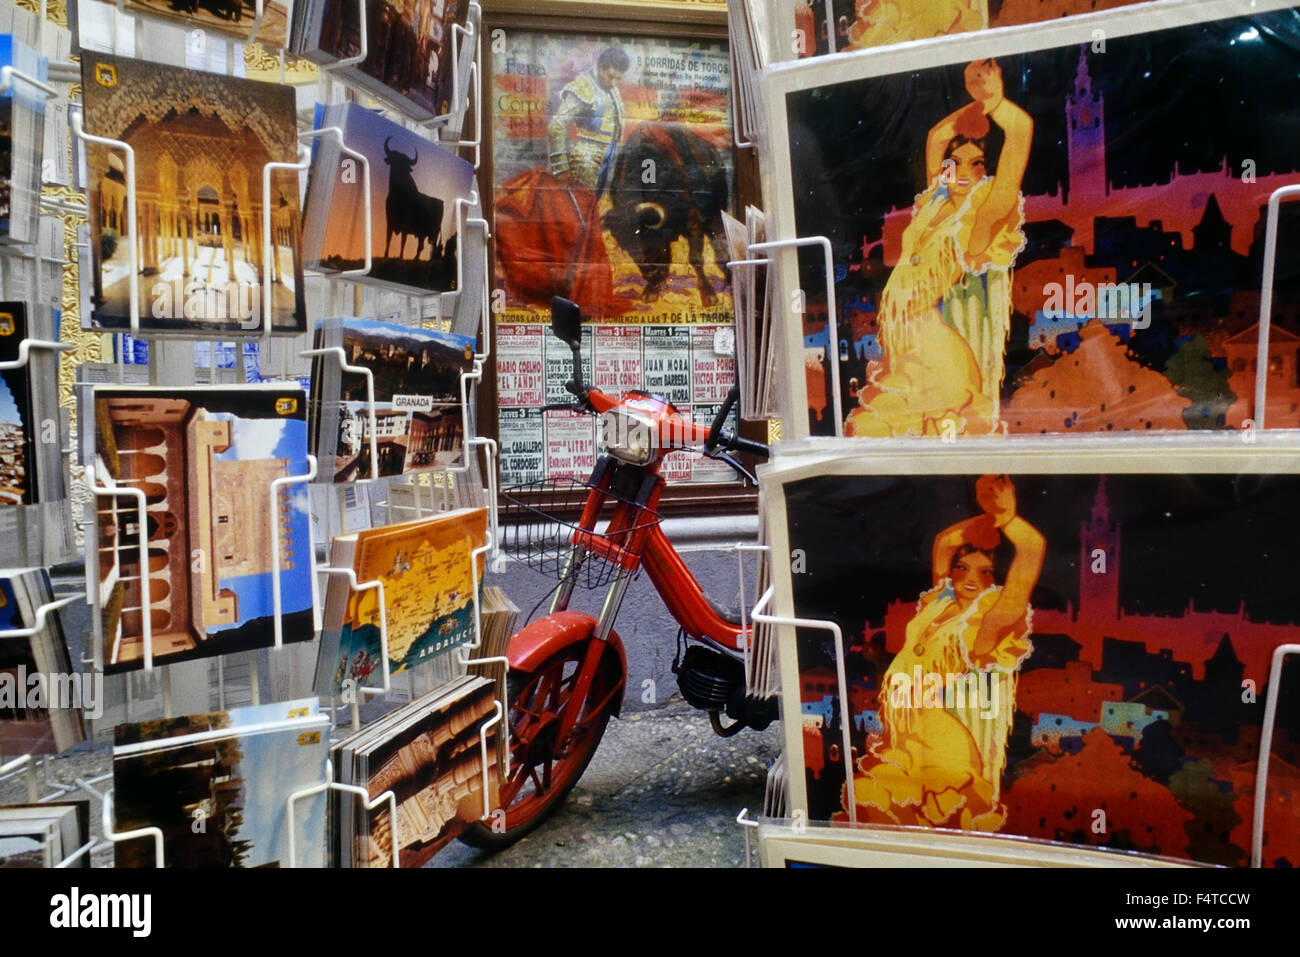 Postkartenregale, Granada. Spanien, Europa Stockfoto